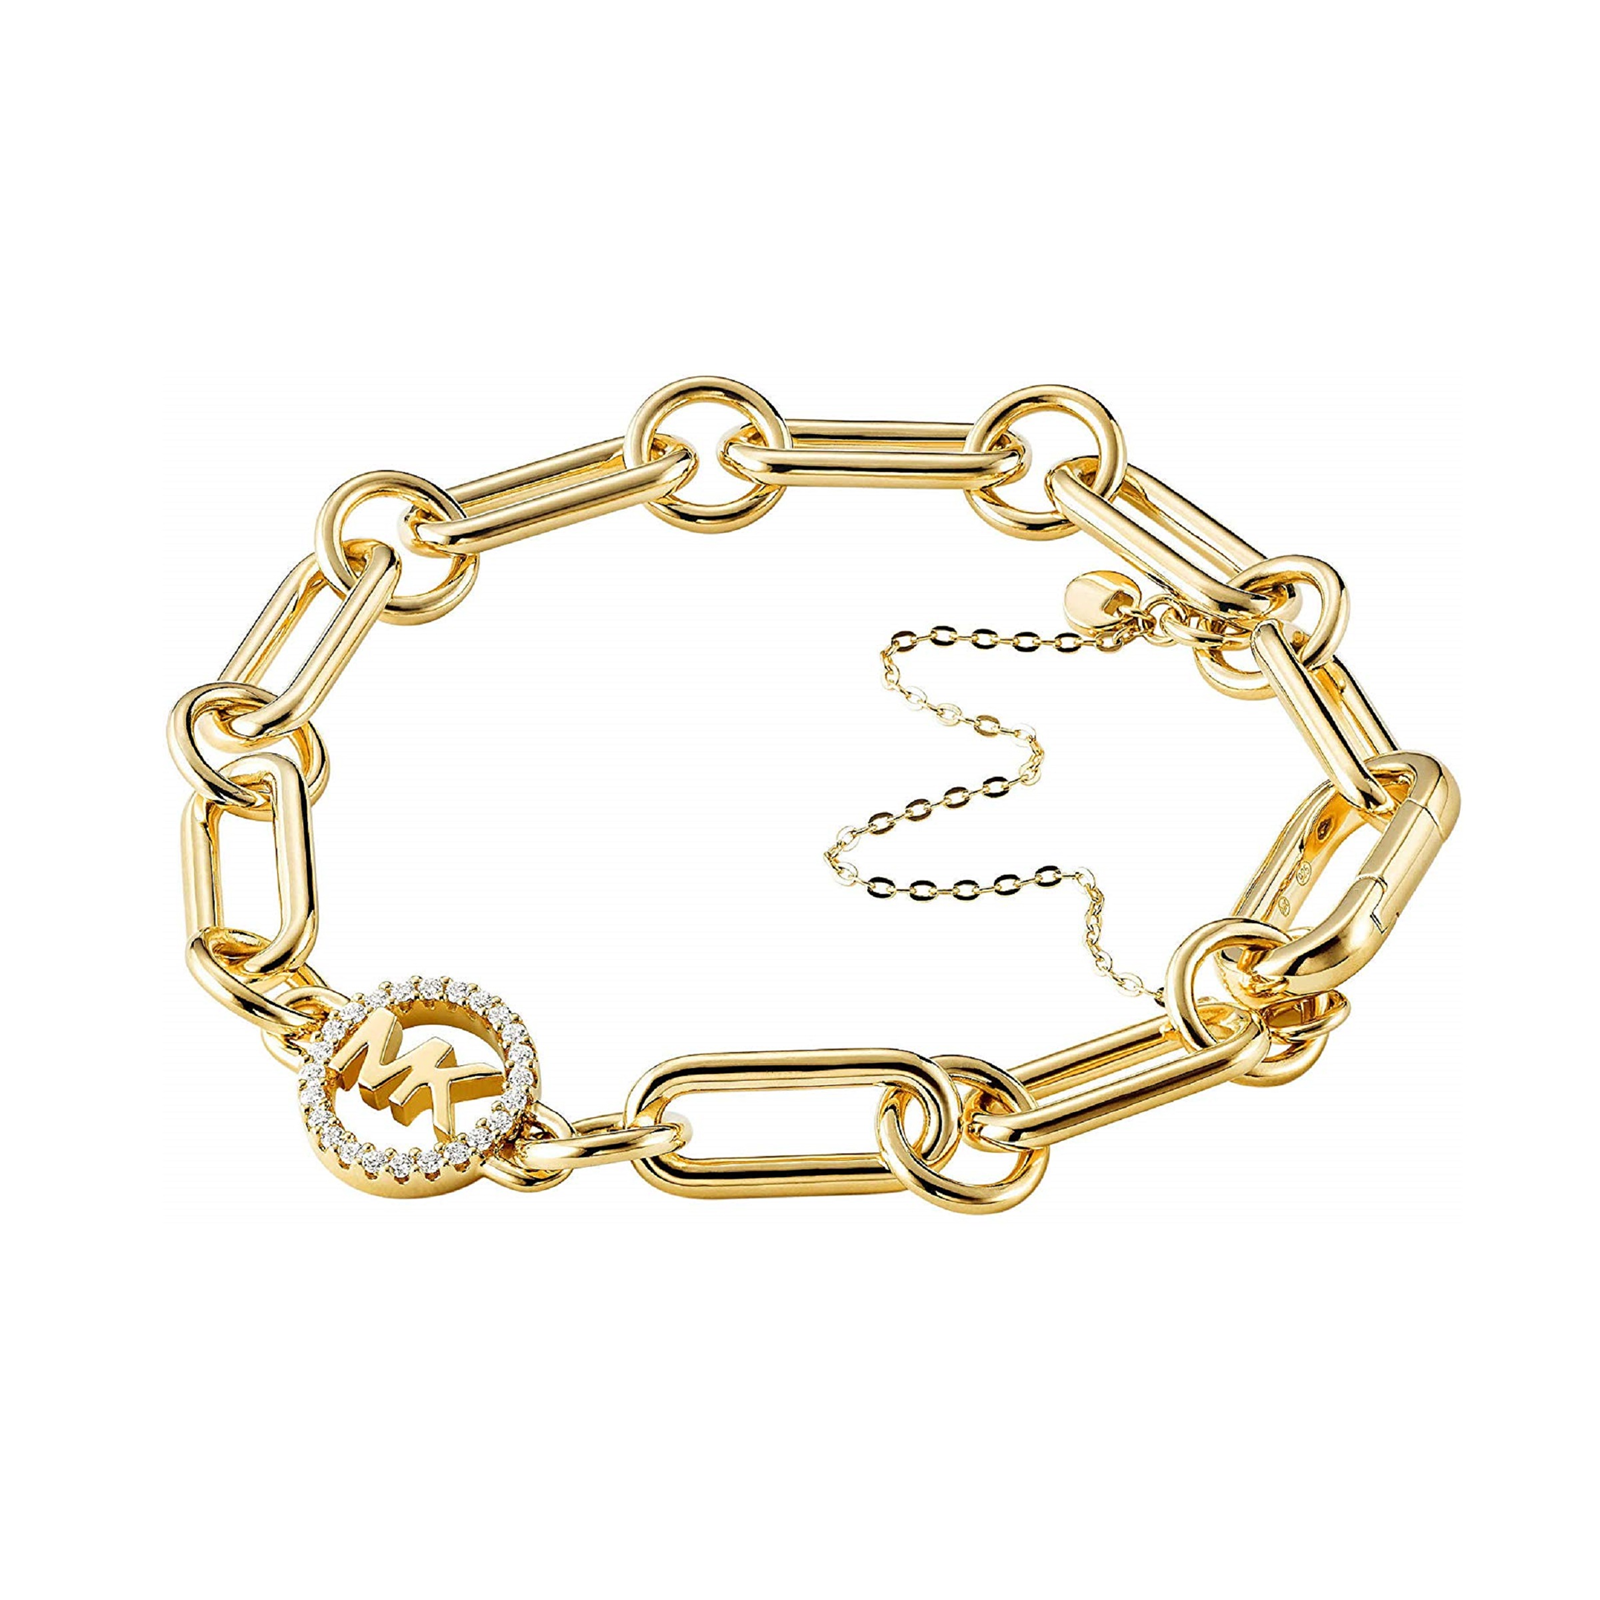 Michael Kors Custom Kors 14ct Gold Plated Charm Bracelet | Bracelets ...